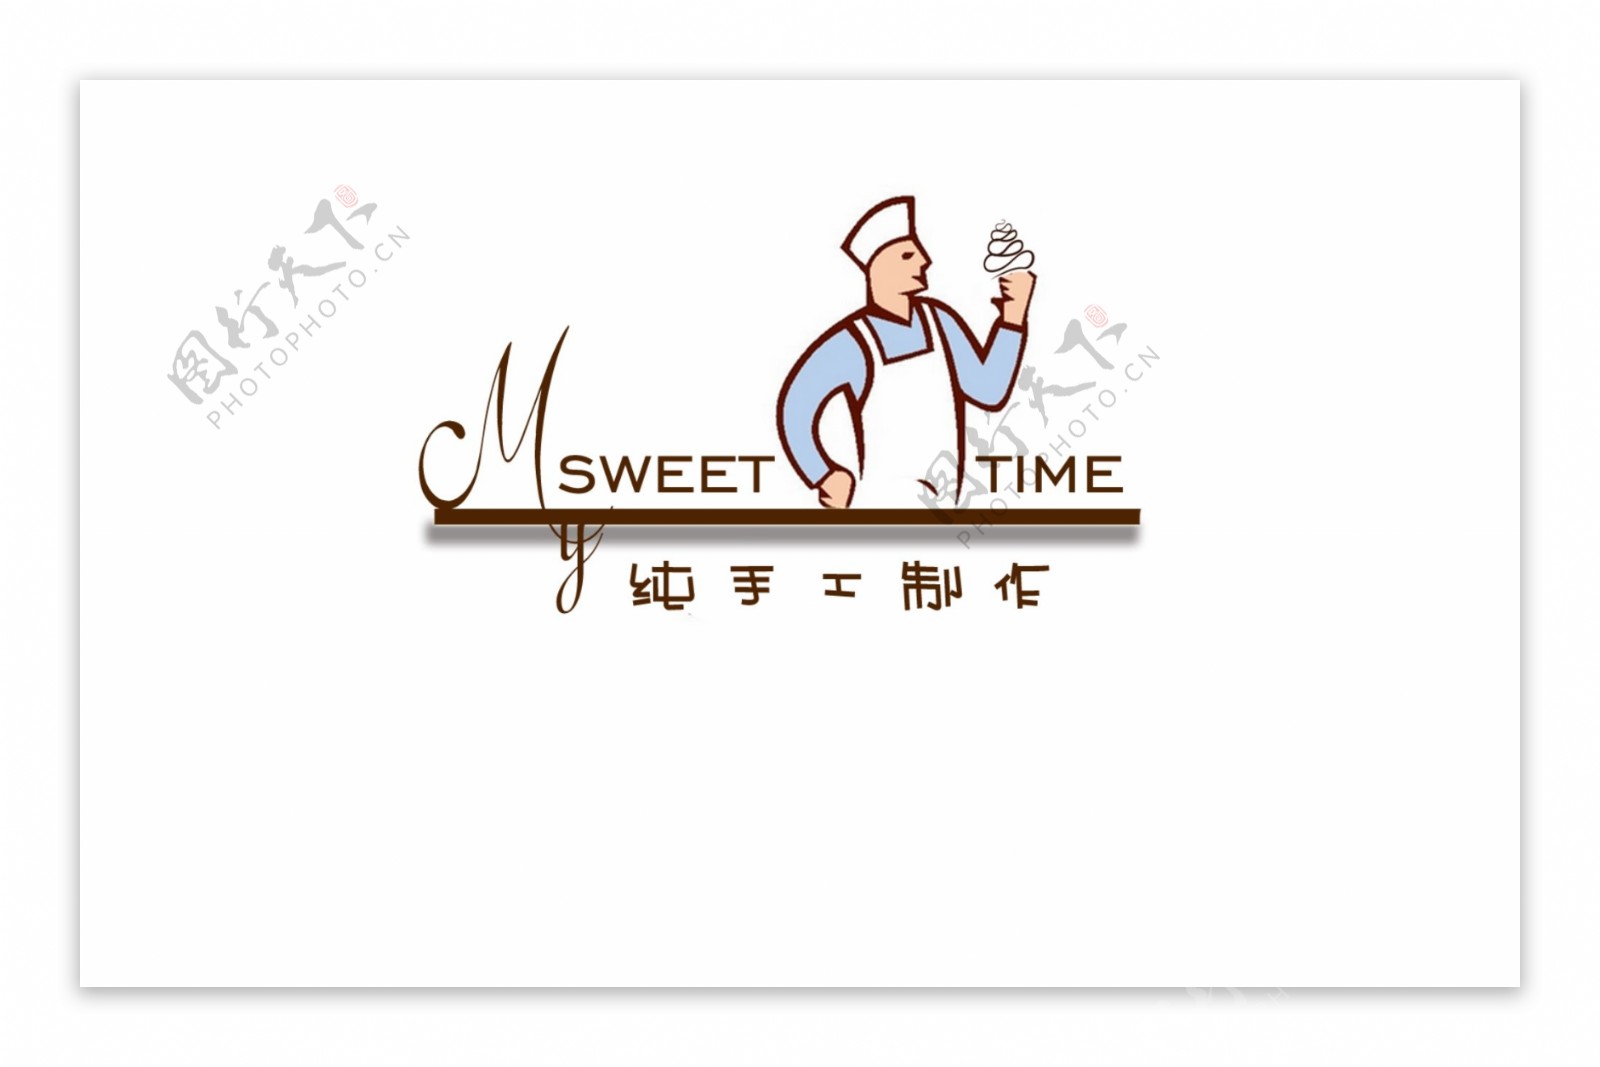 甜品店logo设计